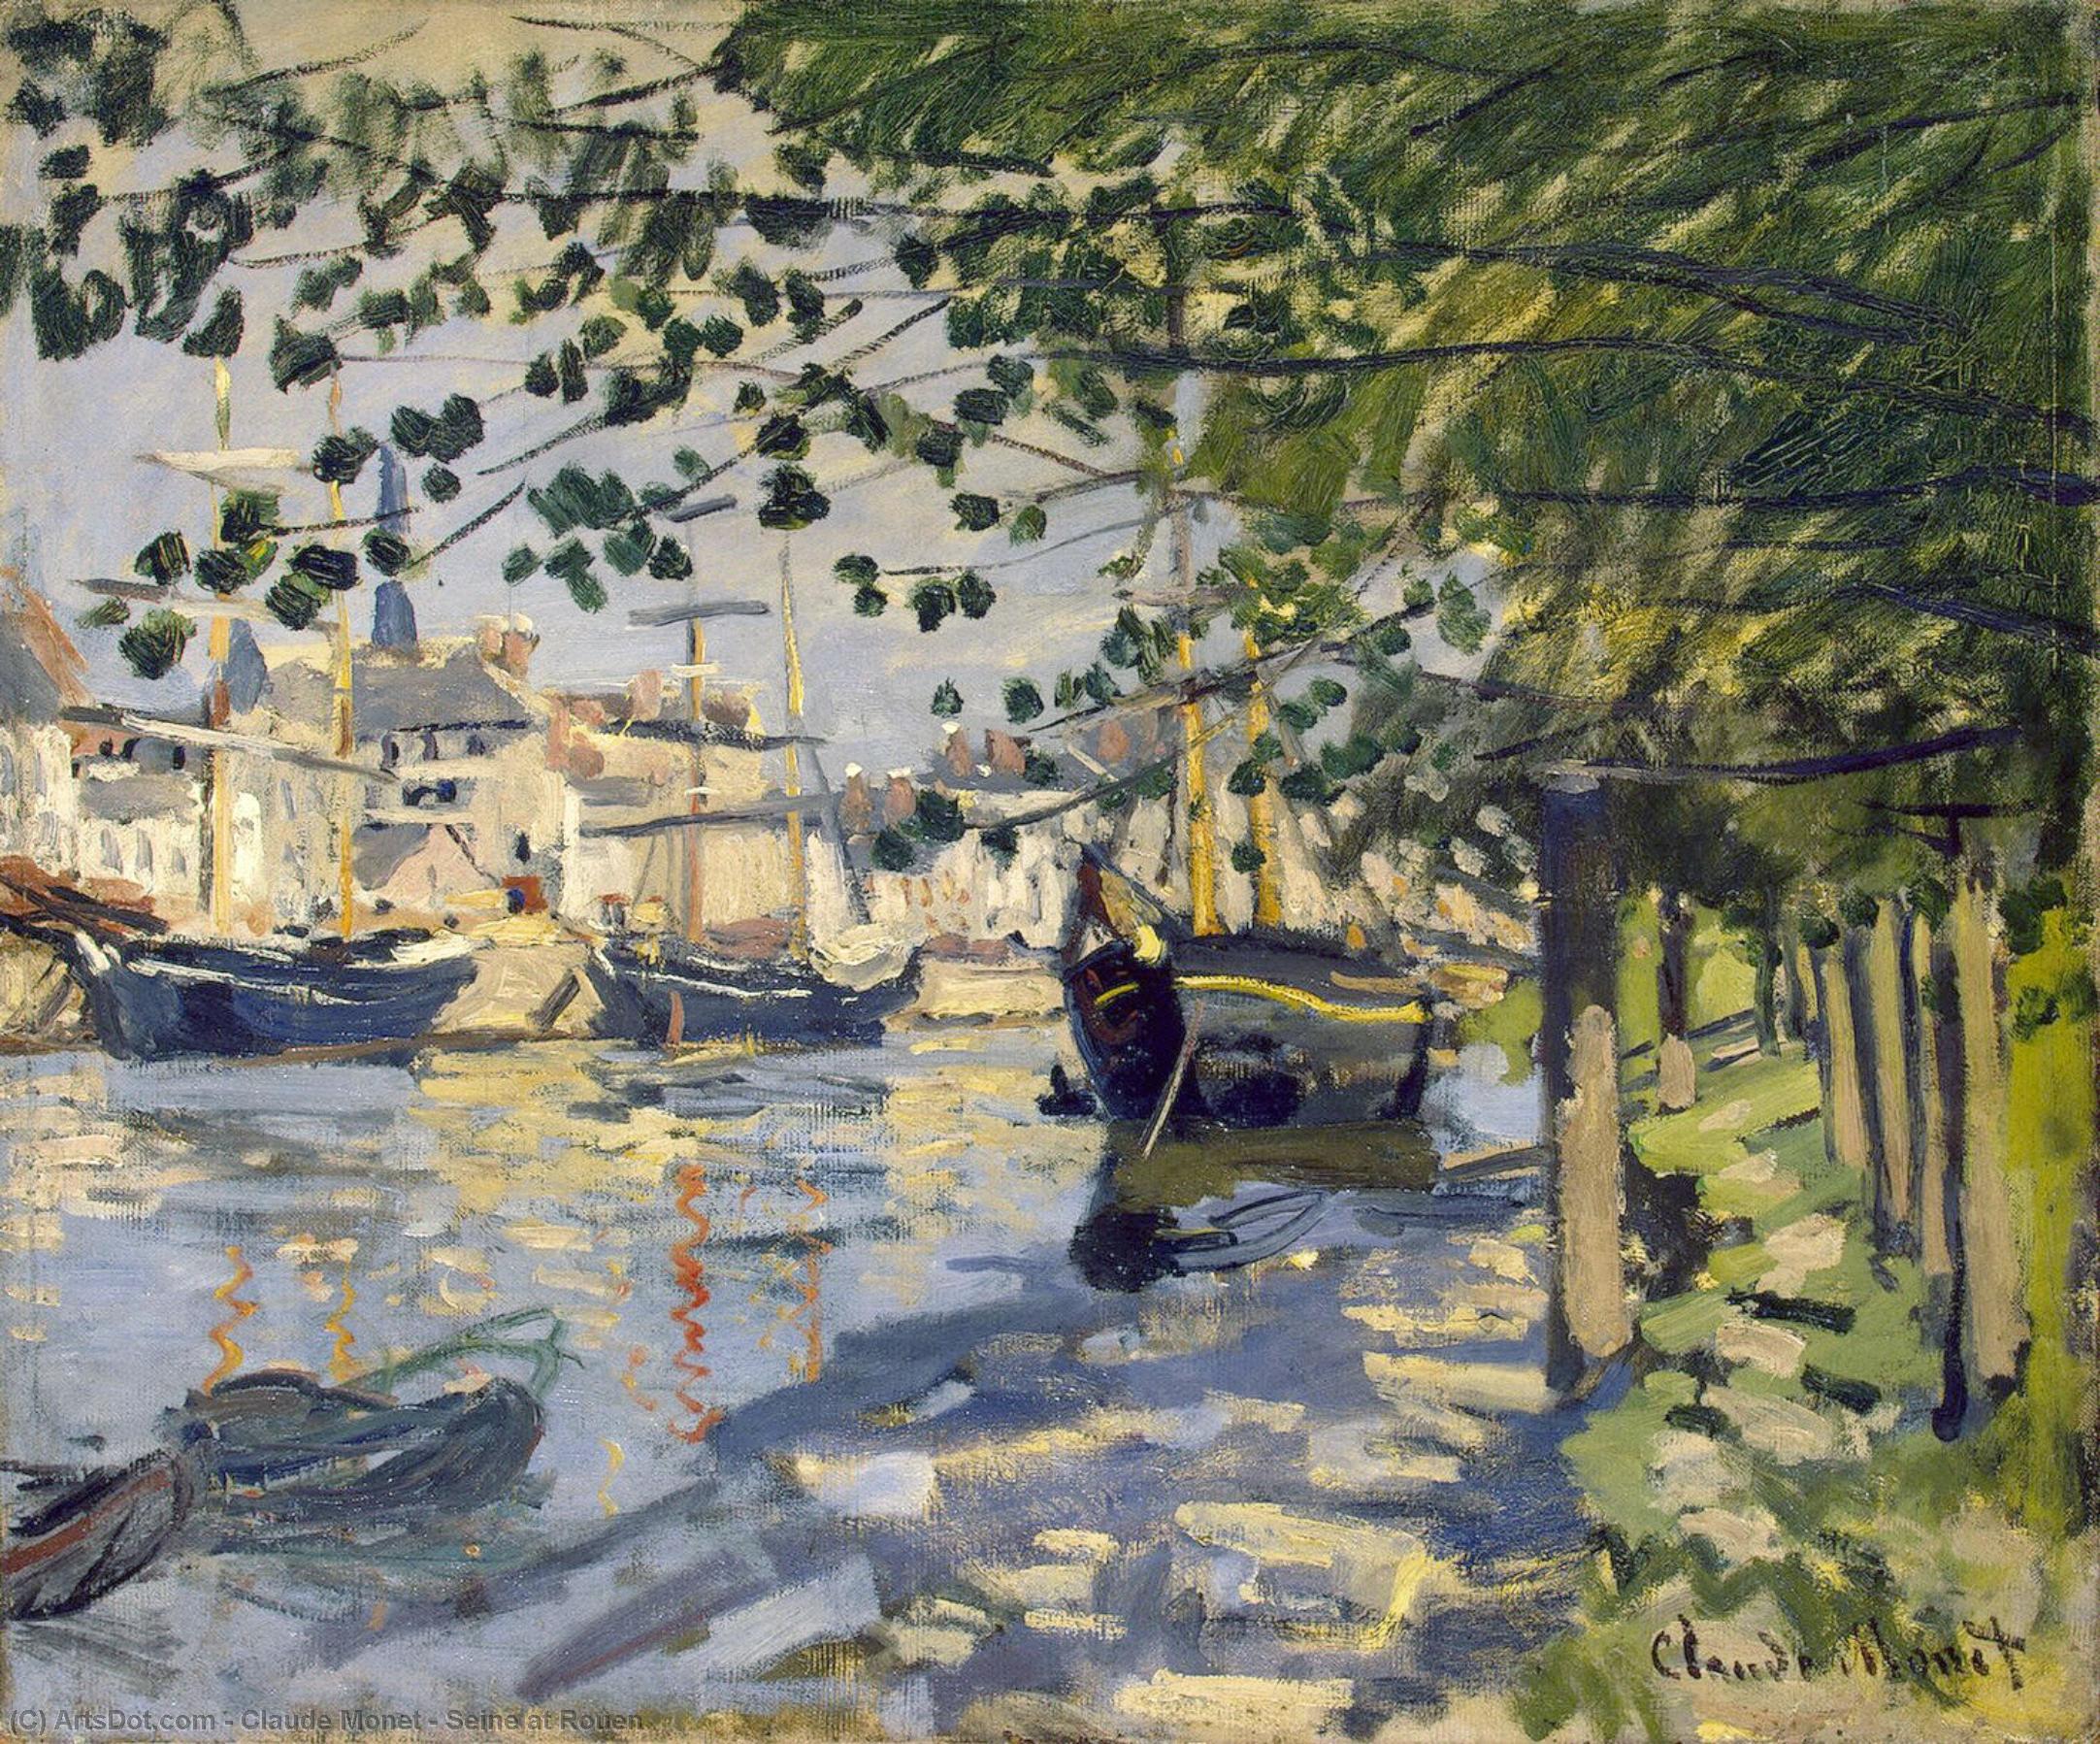 WikiOO.org - אנציקלופדיה לאמנויות יפות - ציור, יצירות אמנות Claude Monet - Seine at Rouen